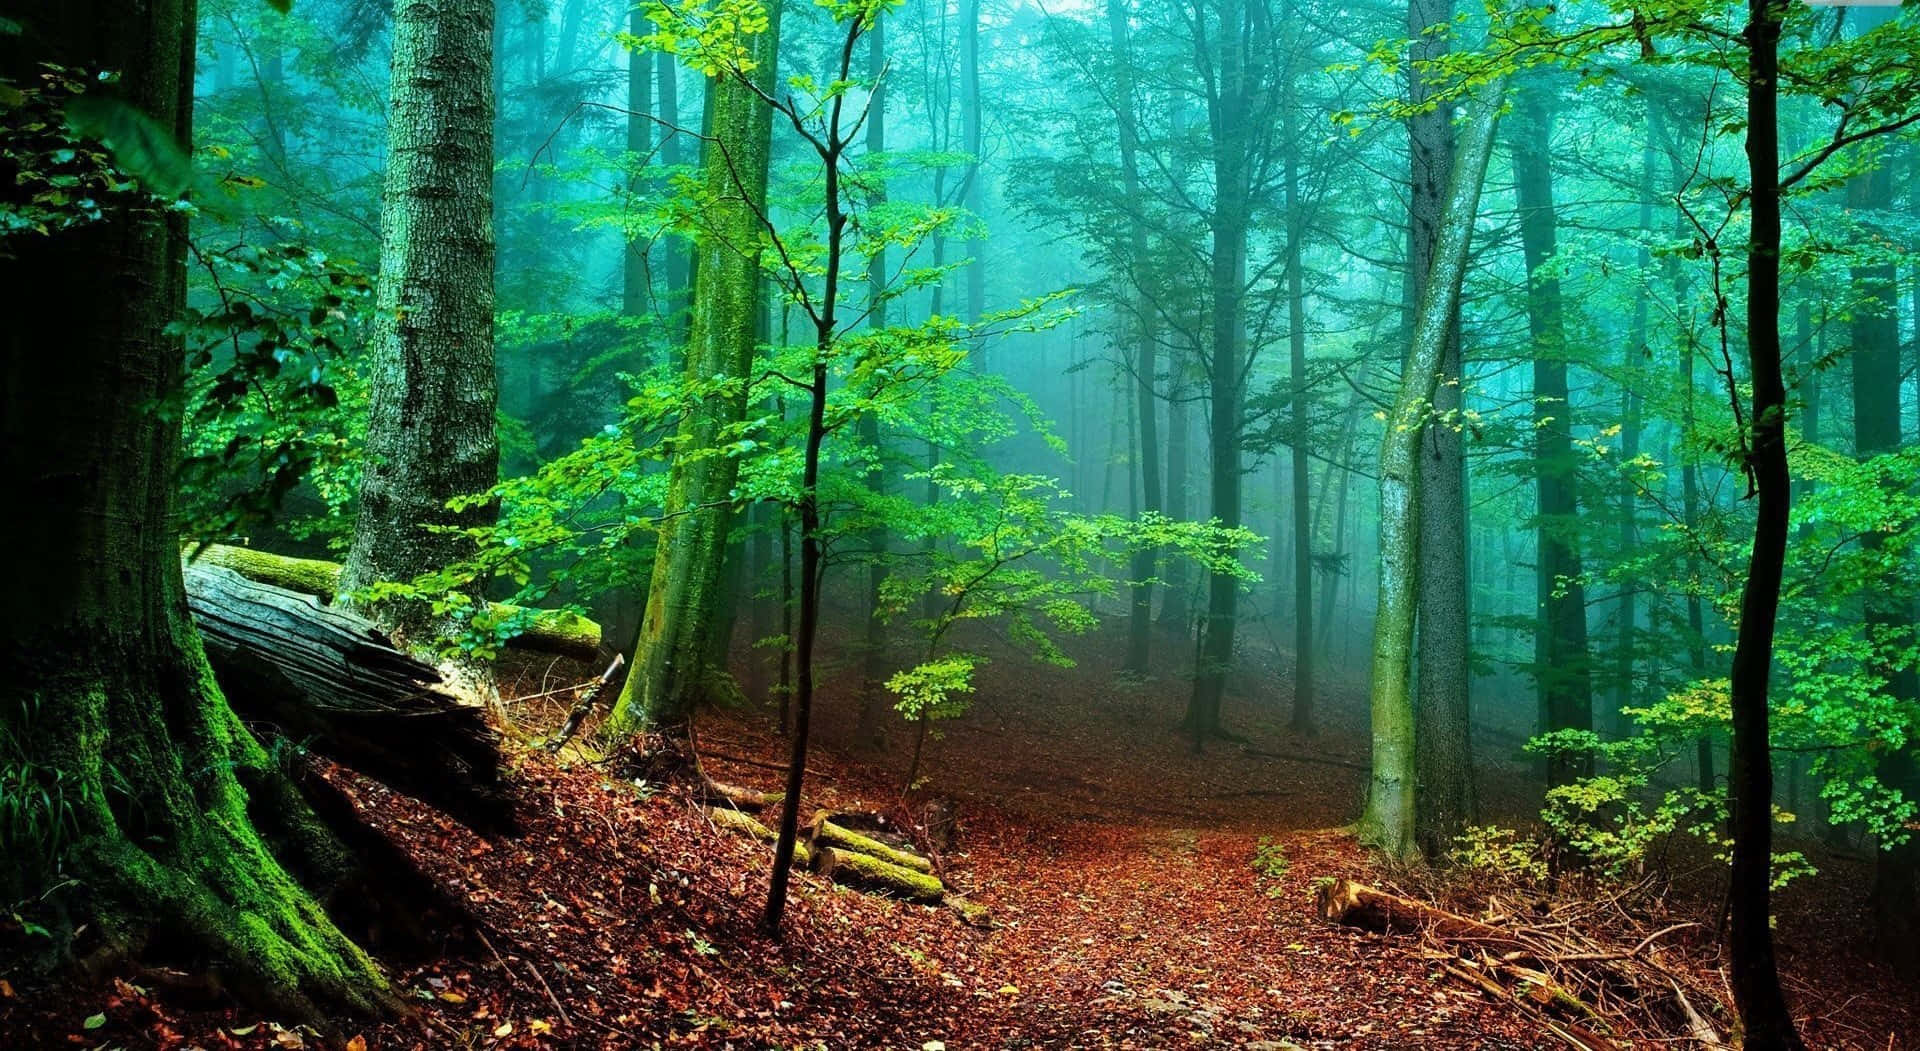 Bosqueexuberante Y Verde; Una Vista De La Belleza De La Naturaleza. Fondo de pantalla